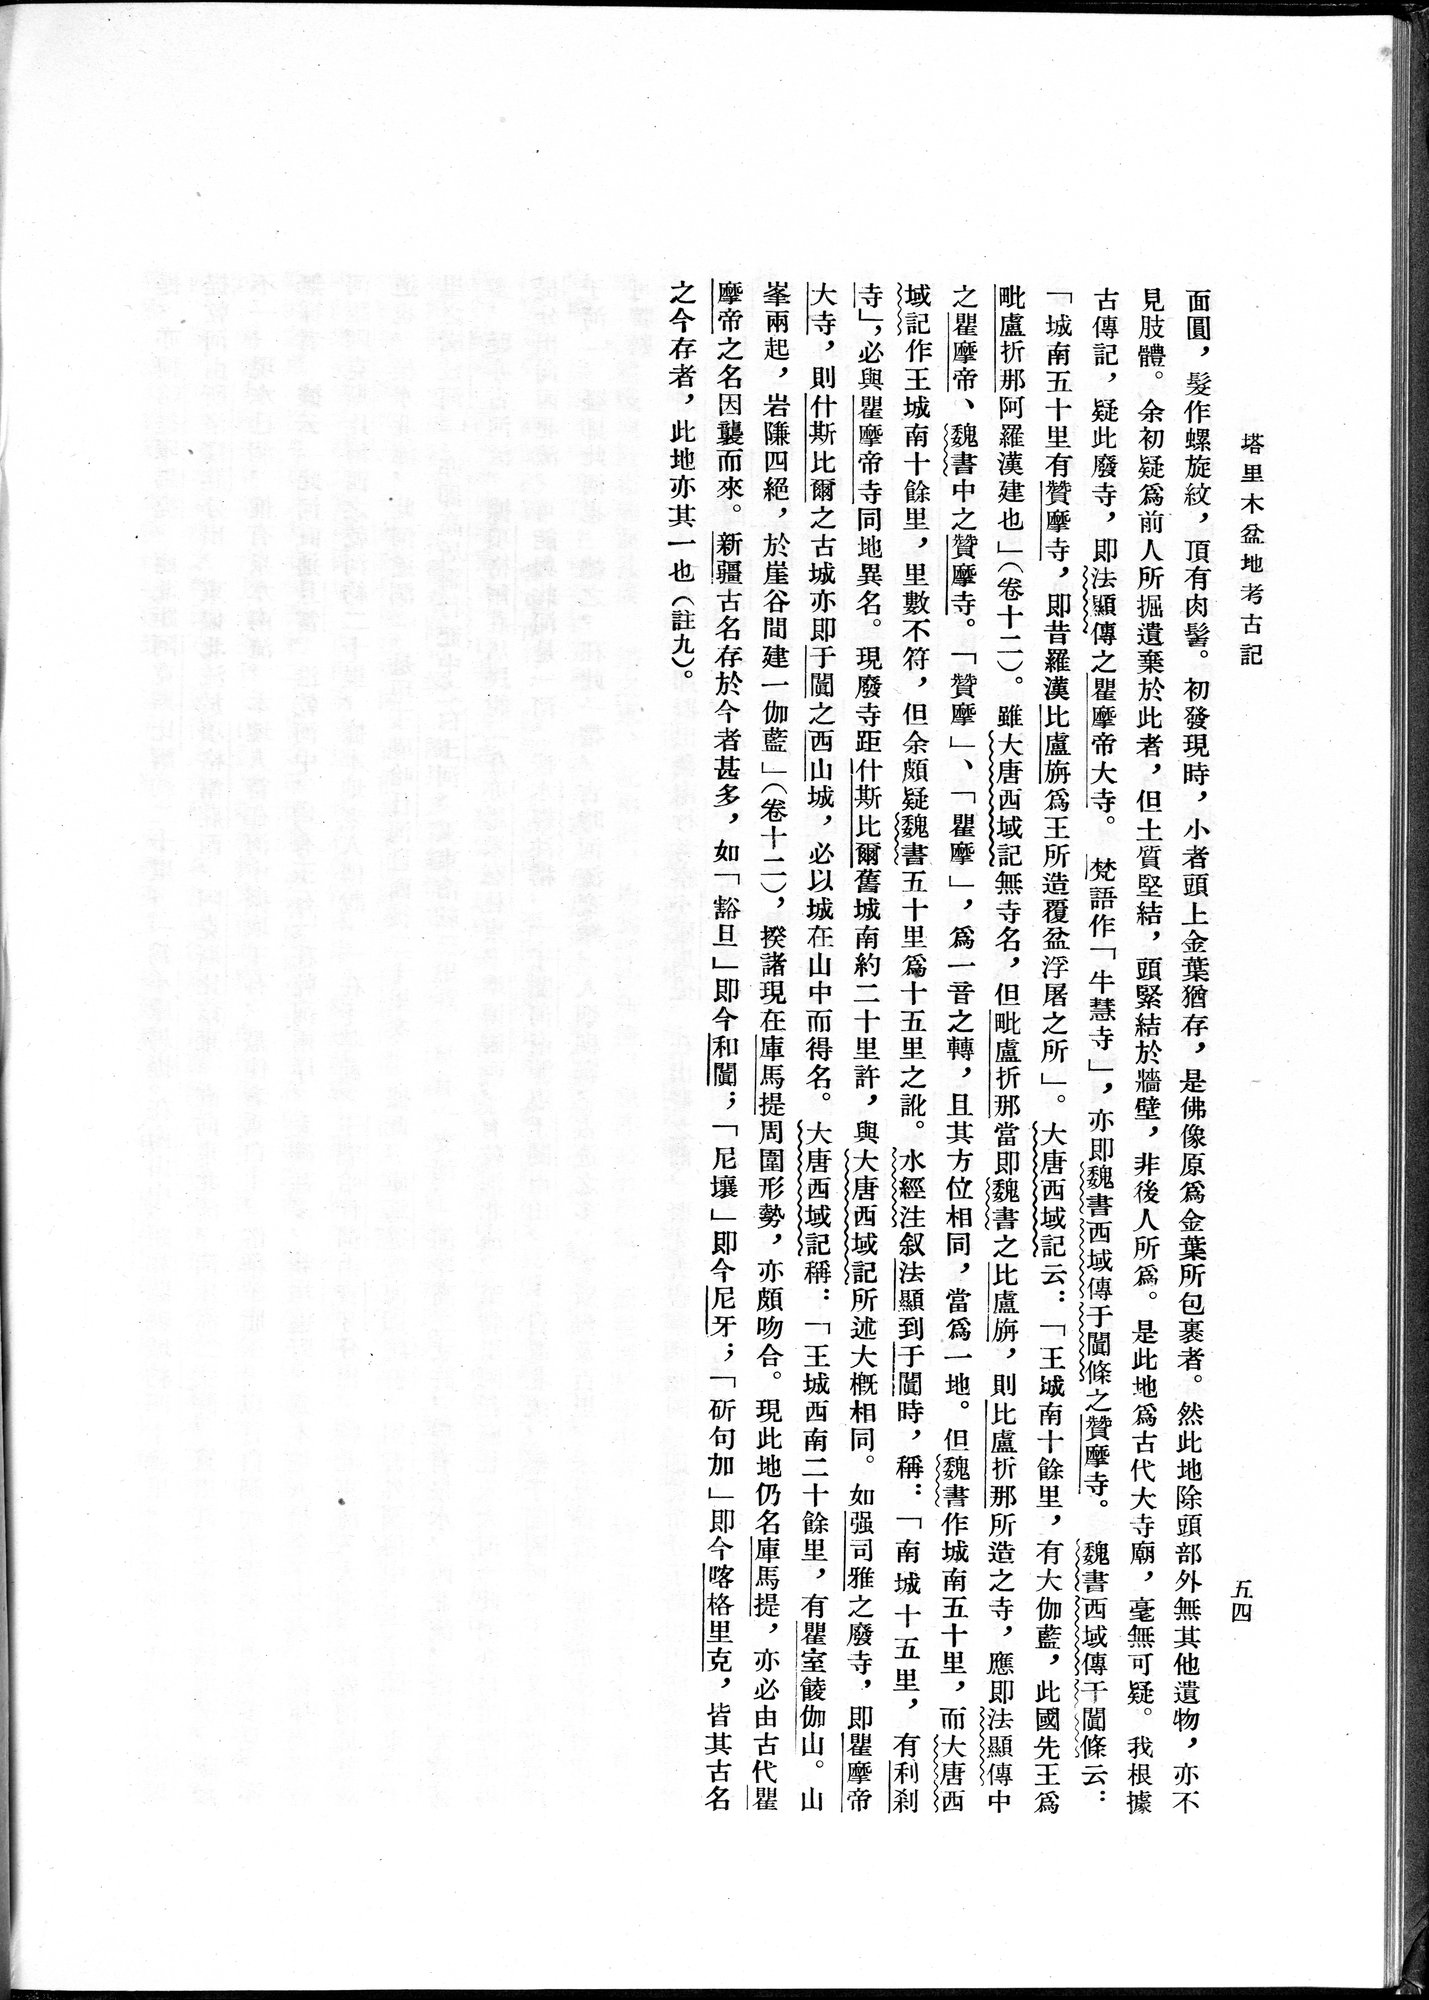 塔里木盆地考古記 : vol.1 / Page 78 (Grayscale High Resolution Image)